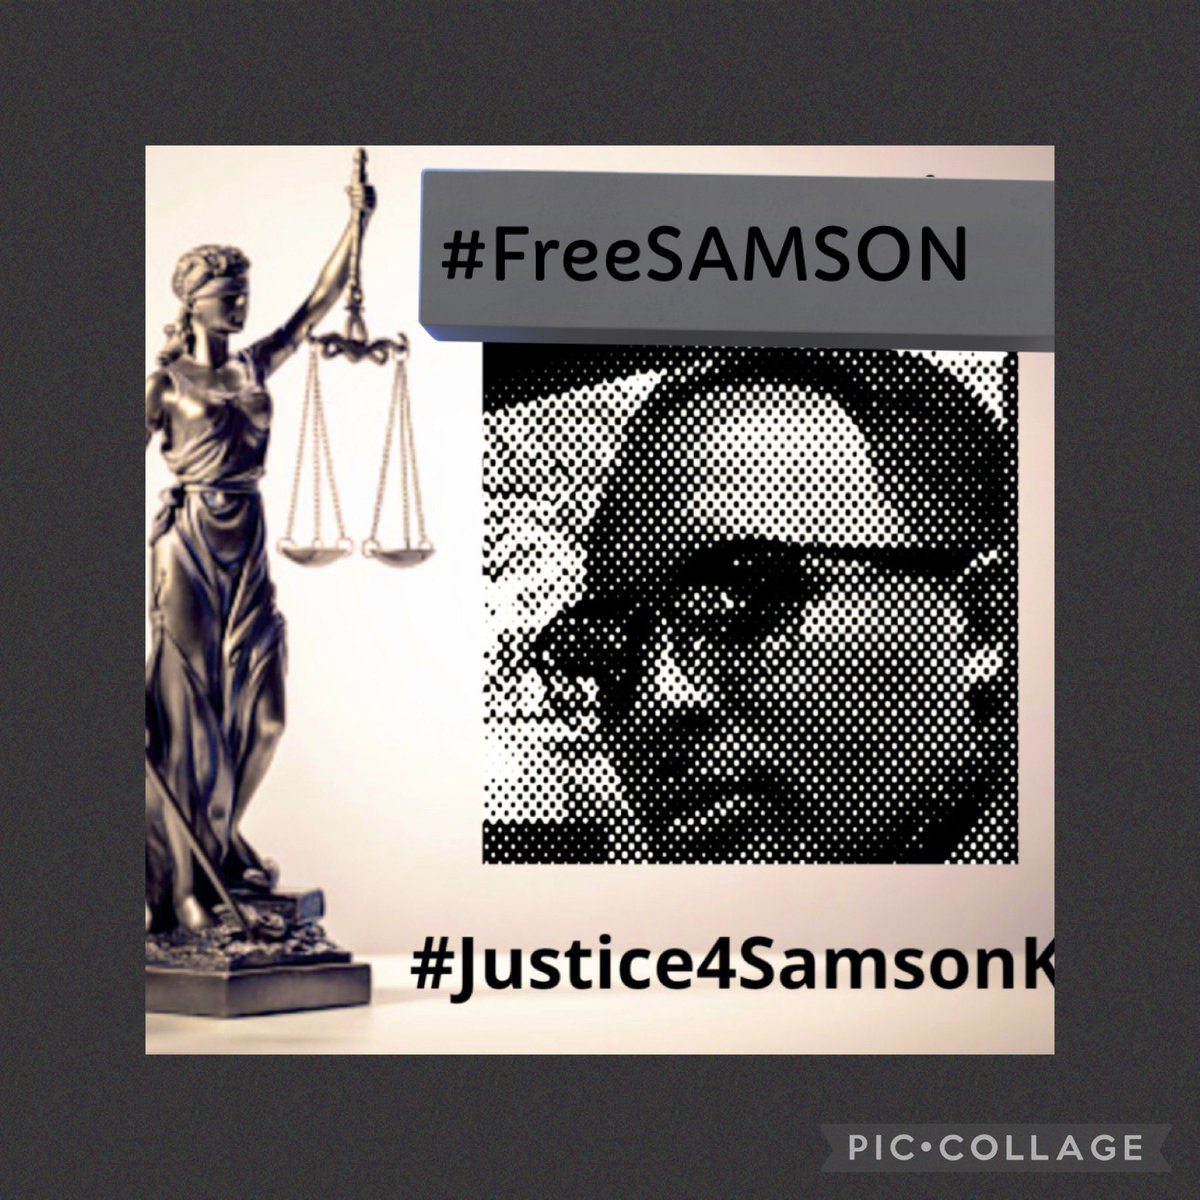 #JusticeforSamson 
@WilliamsRuto 
@hrw @amnesty 
@UN
@humanrights1st